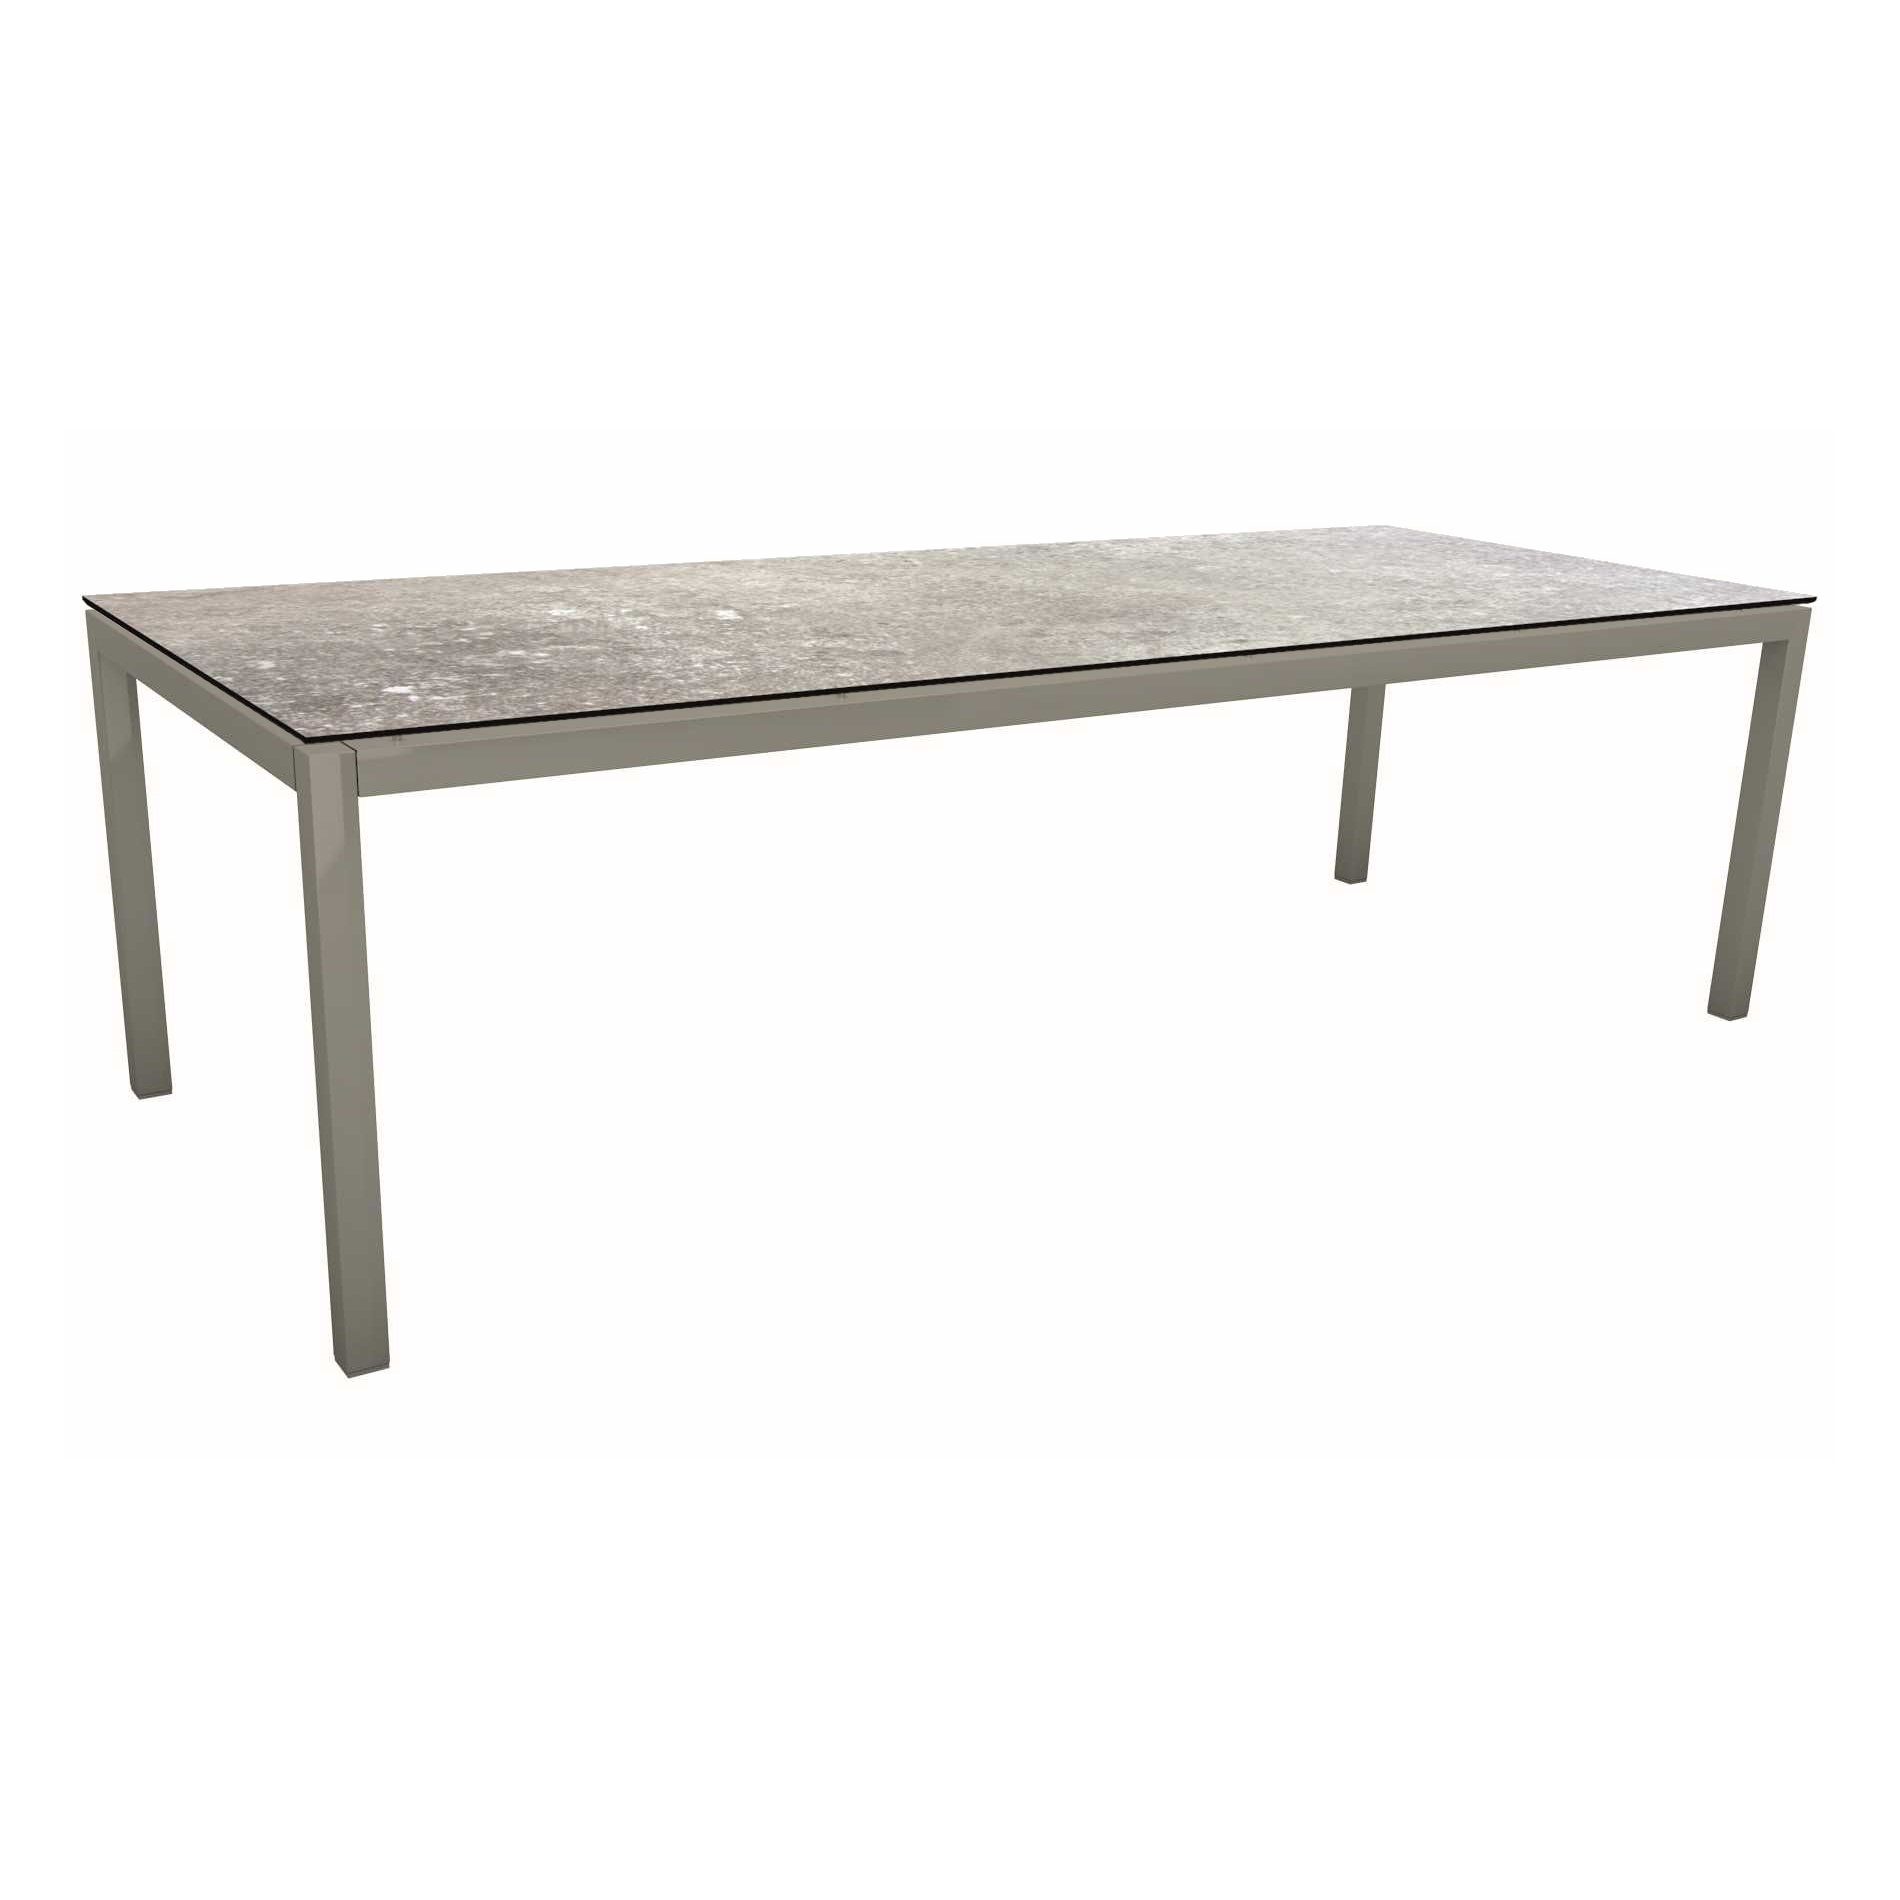 Stern Tischsystem, Gestell Aluminium graphit, Tischplatte HPL Vintage stone, 250x100 cm